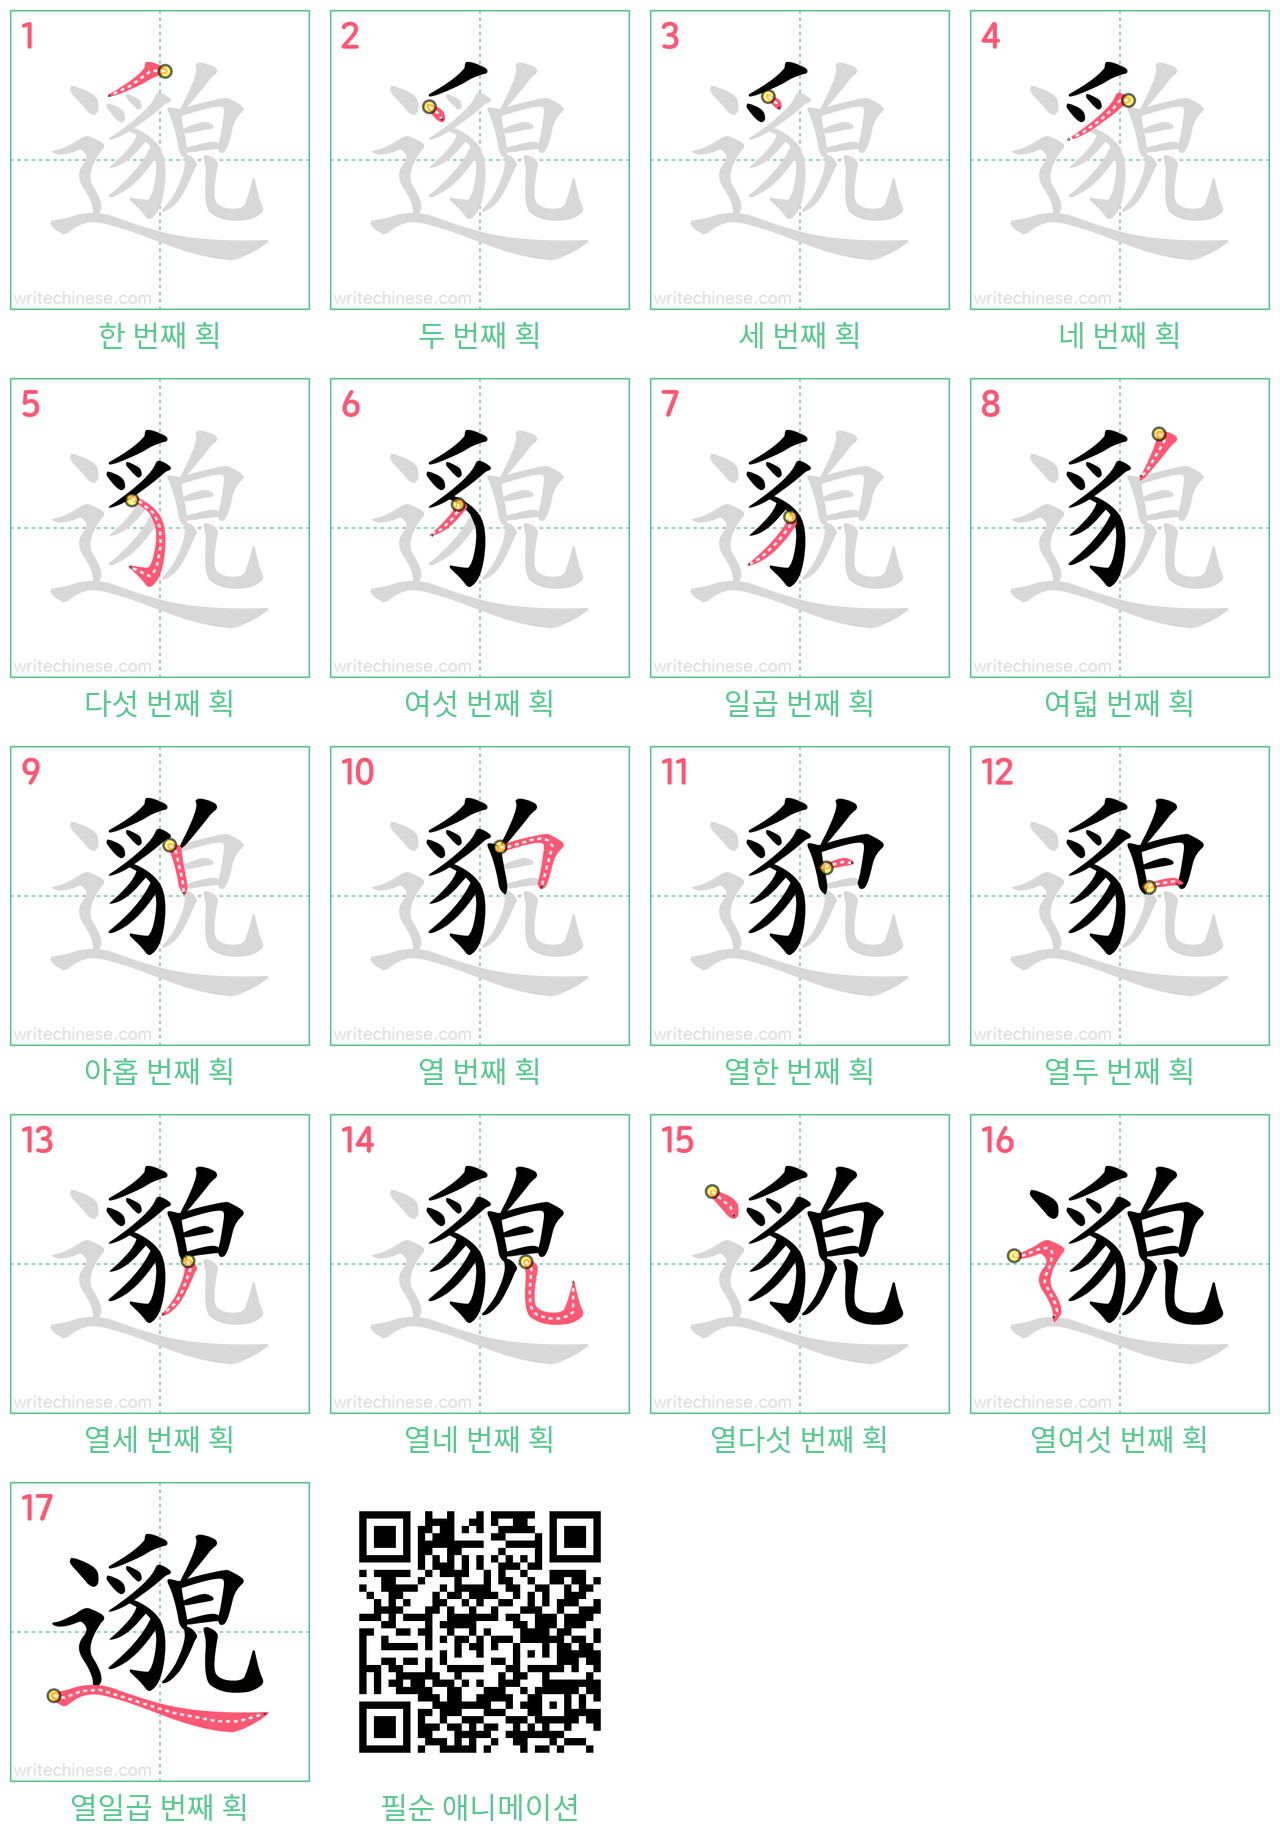 邈 step-by-step stroke order diagrams